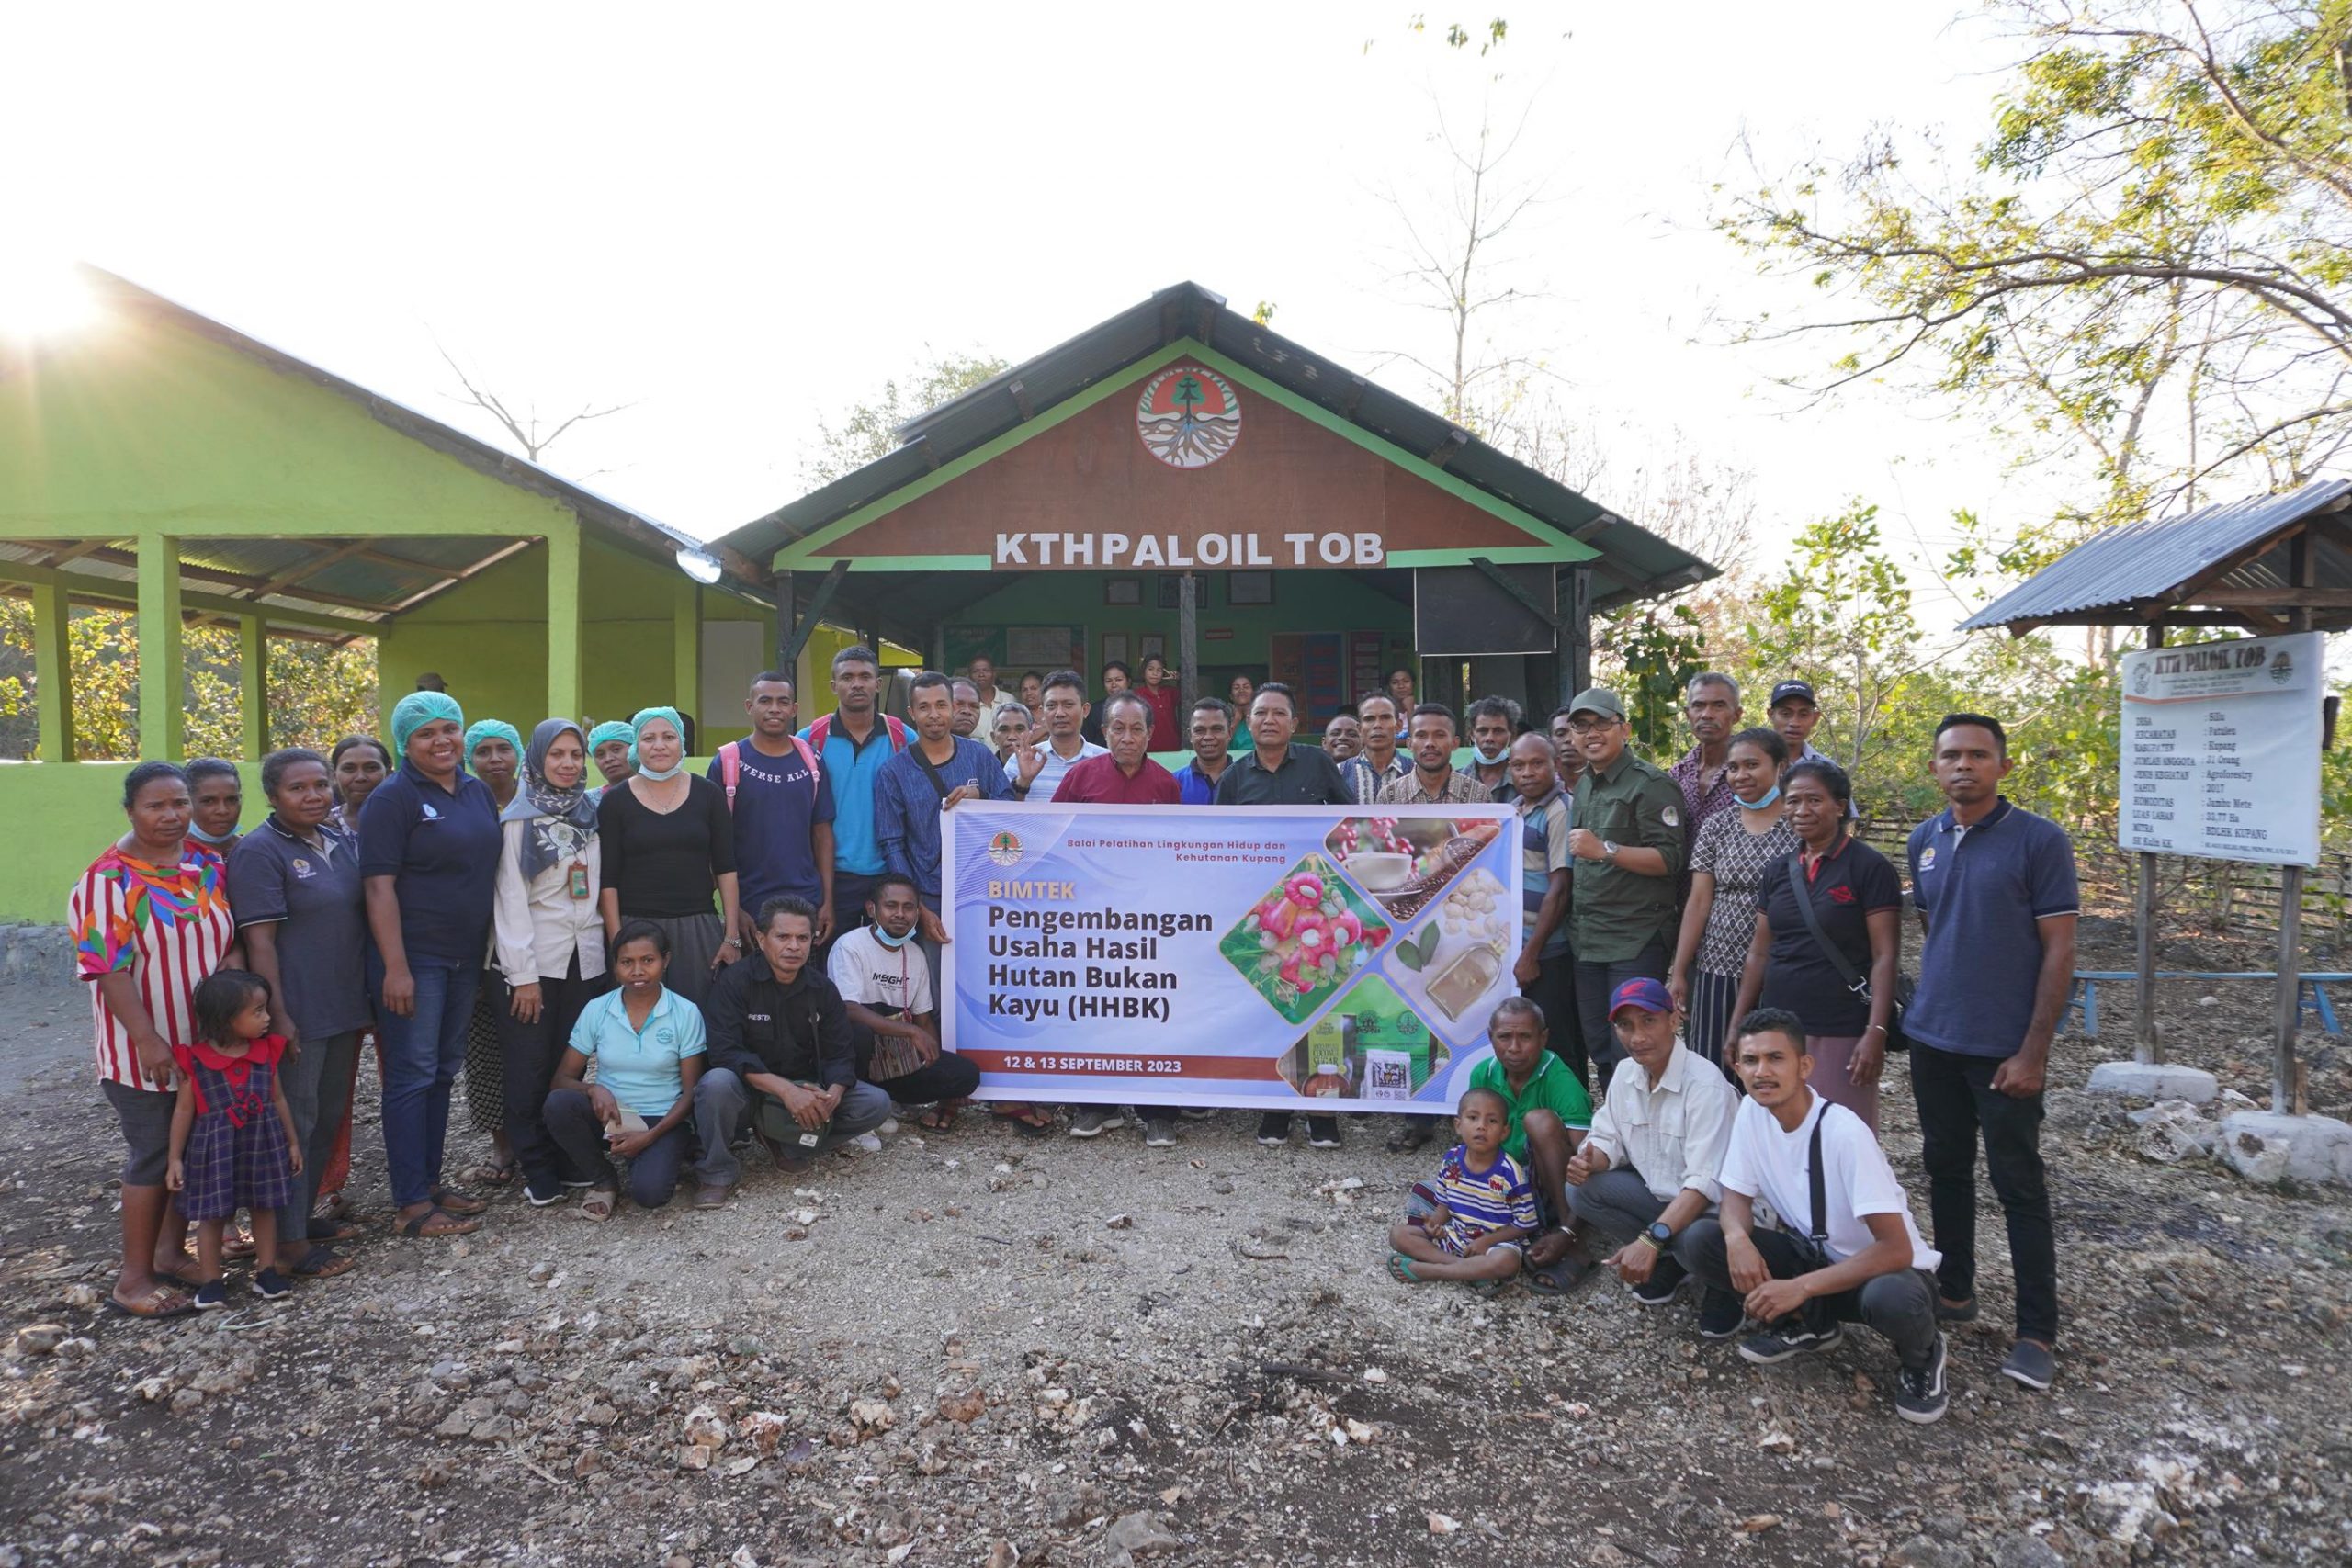 Suksesnya Pelaksanaan Bimbingan Teknis Pengembangan Usaha Hasil Hutan Bukan Kayu di Wanawiyata Widya Karya Kelompok Tani Hutan Paloil Tob